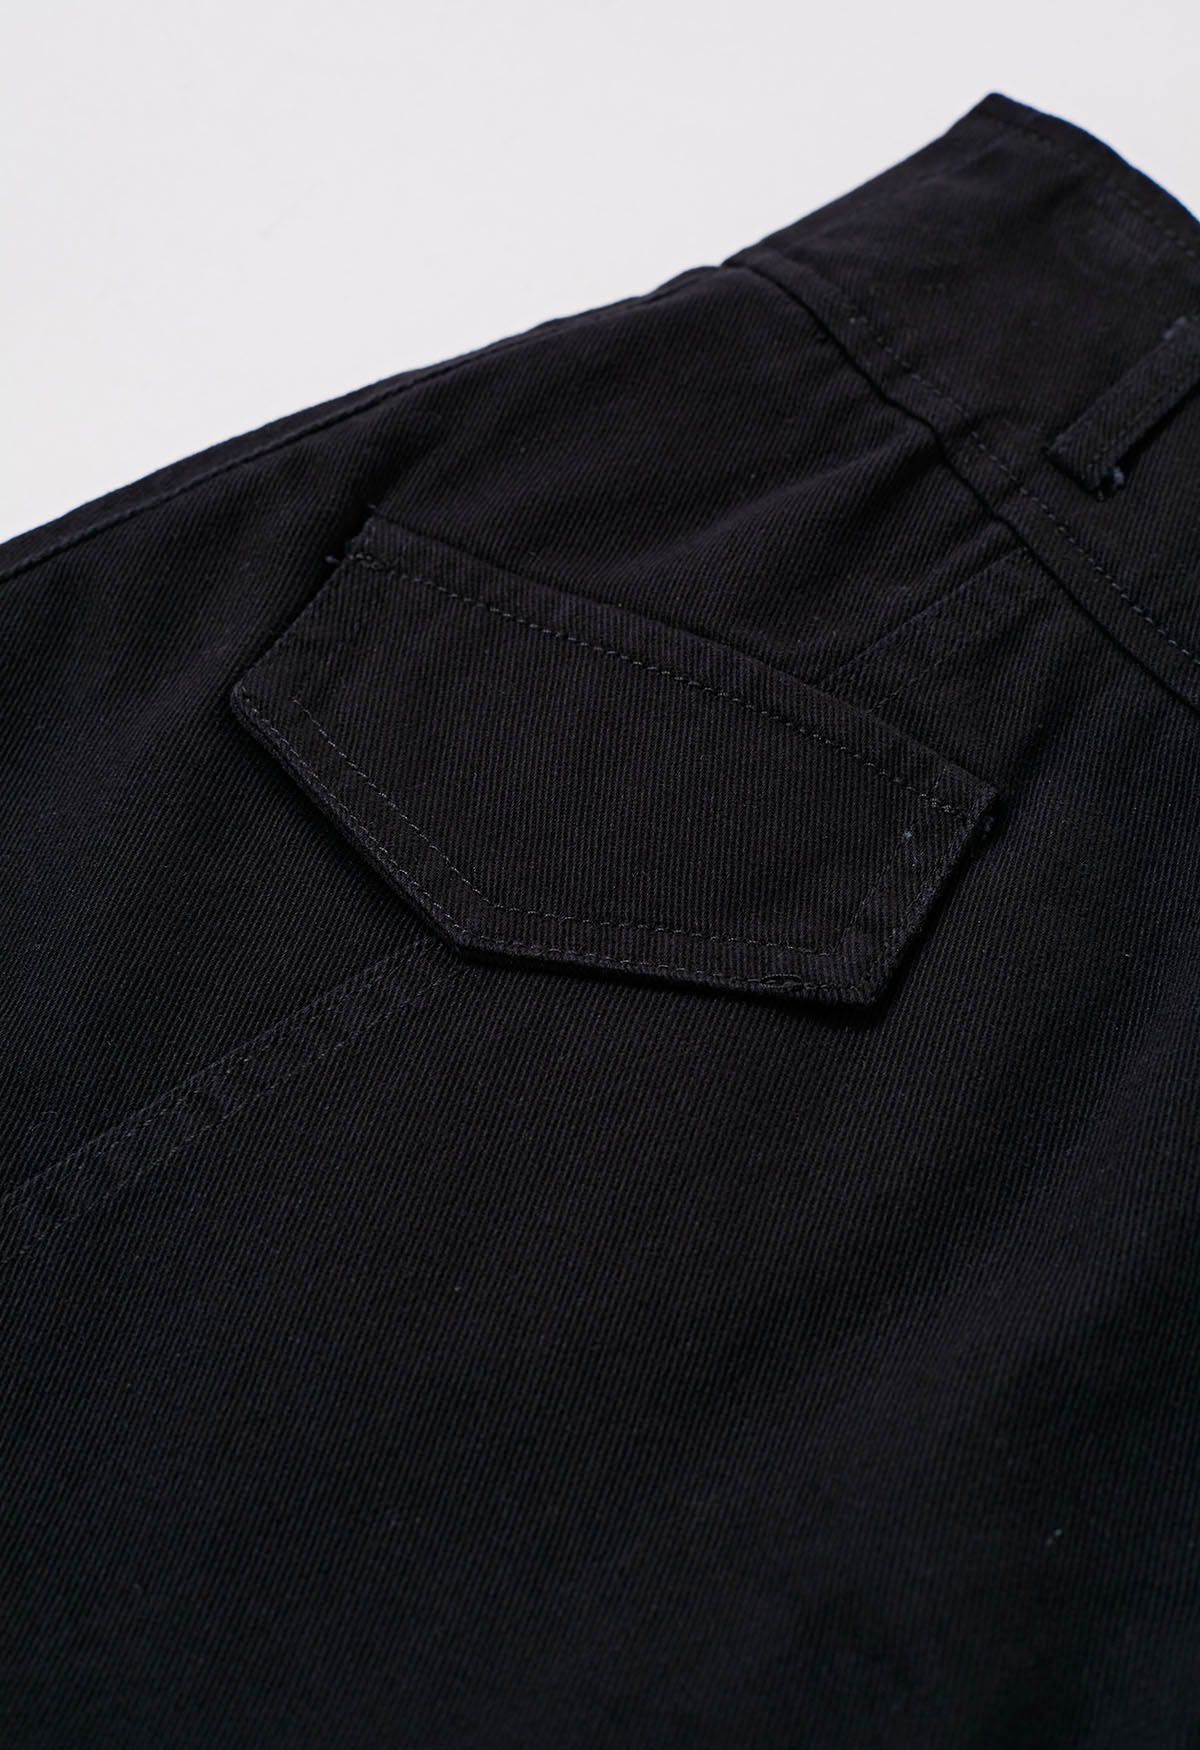 Falda pantalón vaquera con cinturón y bolsillos falsos con solapa en negro